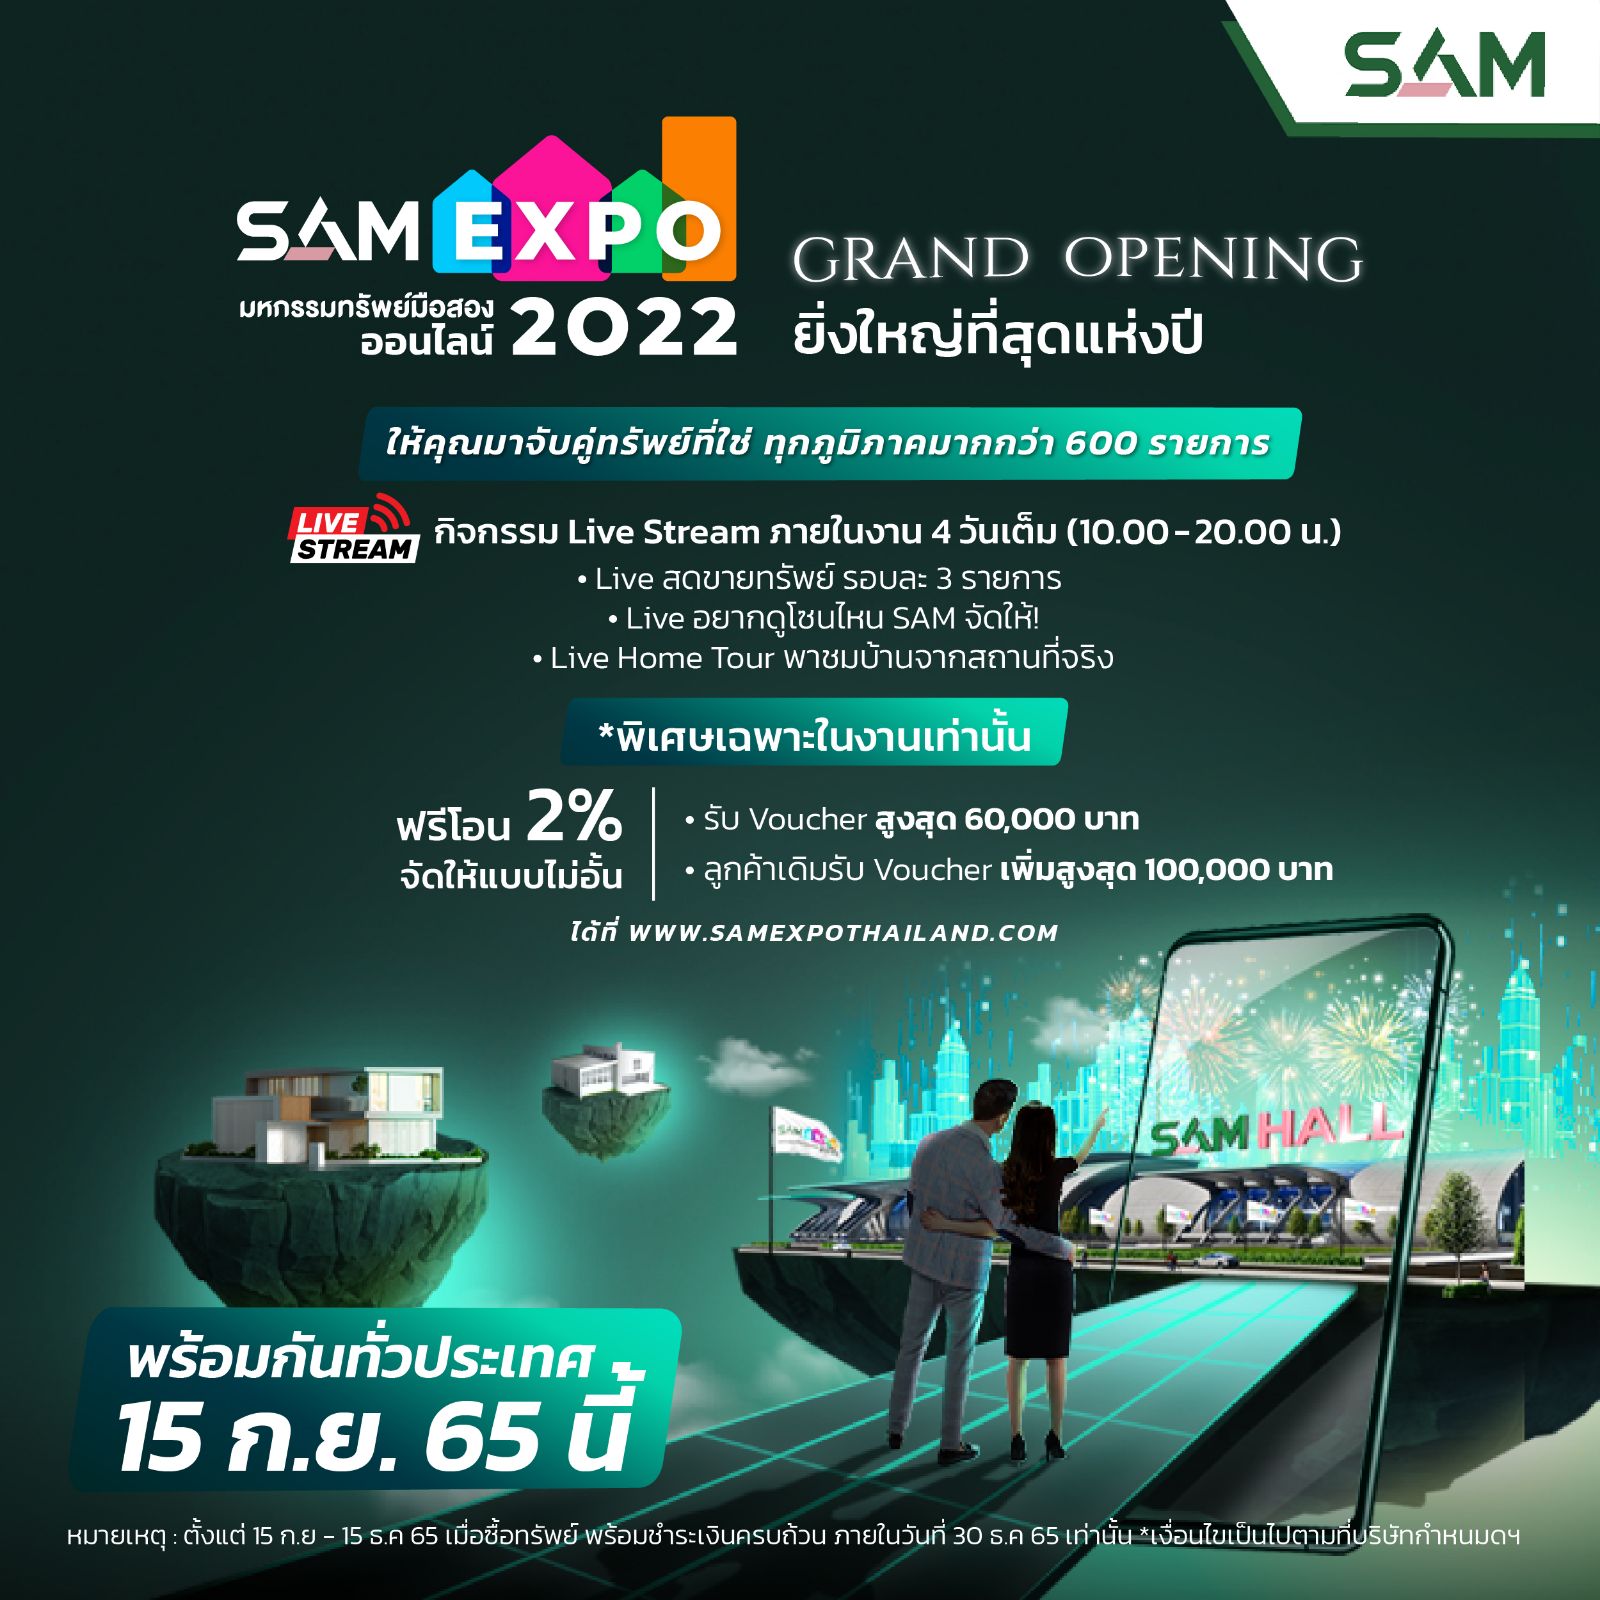 SAM ผุด “SAM Expo มหกรรมทรัพย์มือสองออนไลน์ 2022″ ที่ยิ่งใหญ่ที่สุดแห่งปี บนแพลตฟอร์มออนไลน์